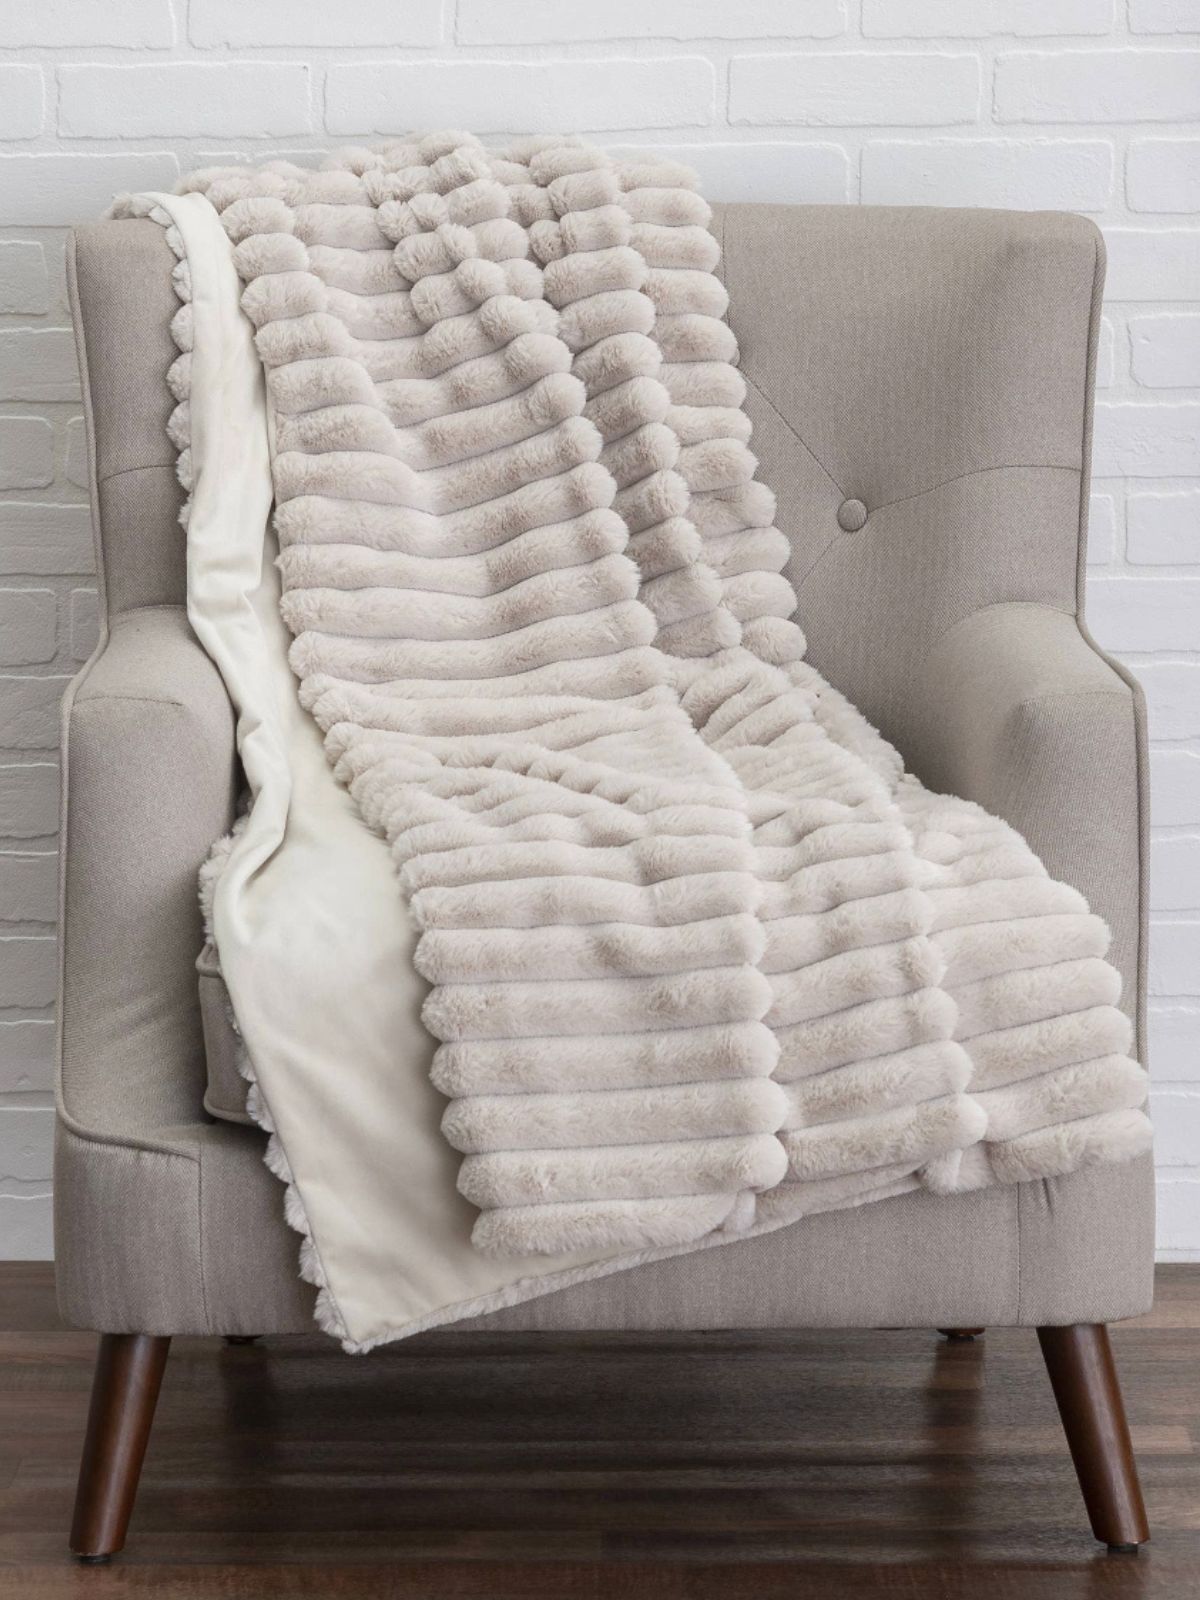 Lux Beige Designer Throw Blanket Sold by KYA Home Decor, 60L x 50W. 